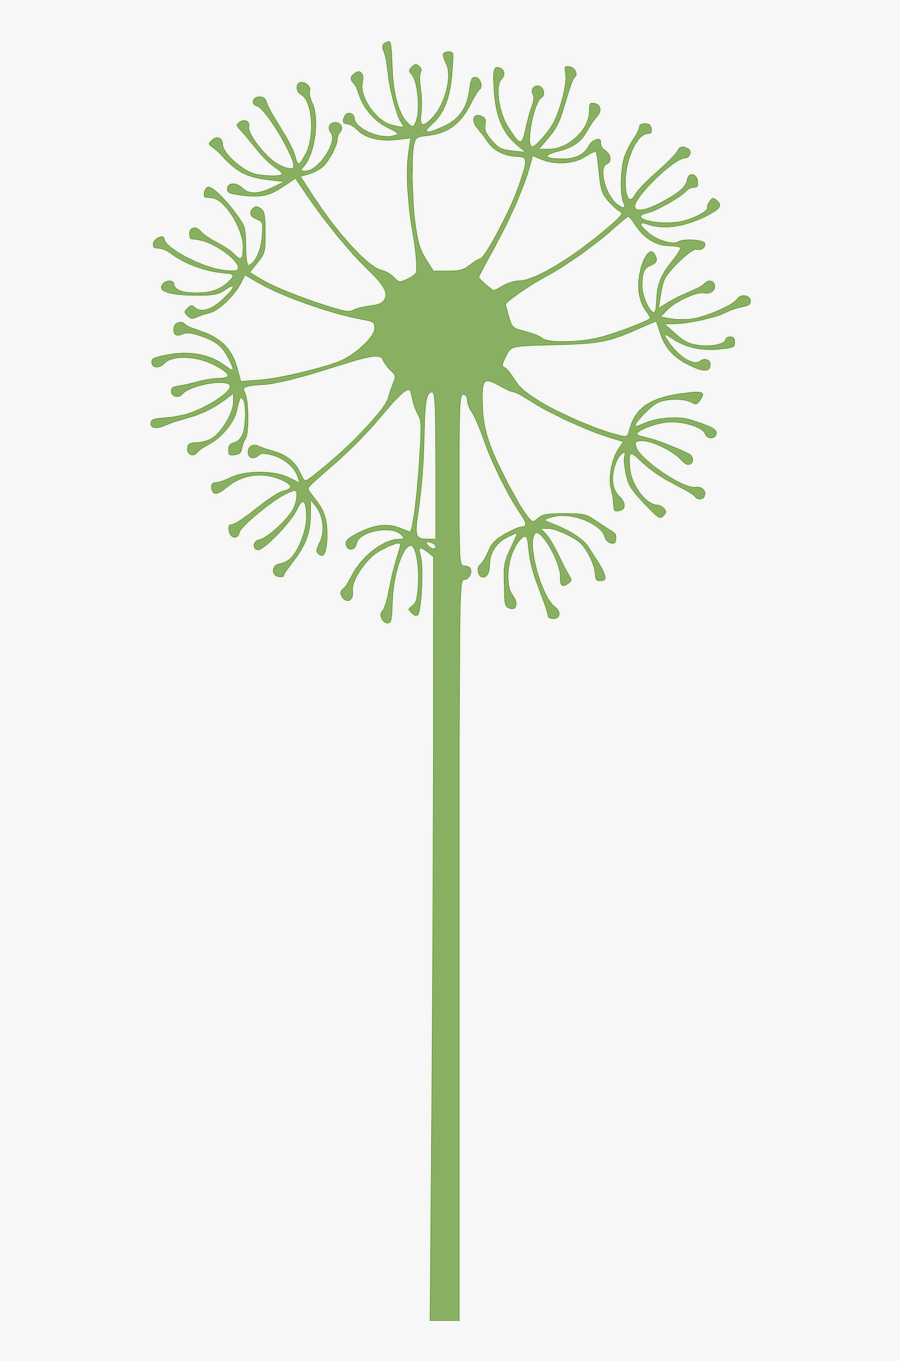 Dandelion Flower Green Free Picture - Cricut Dandelion, Transparent Clipart